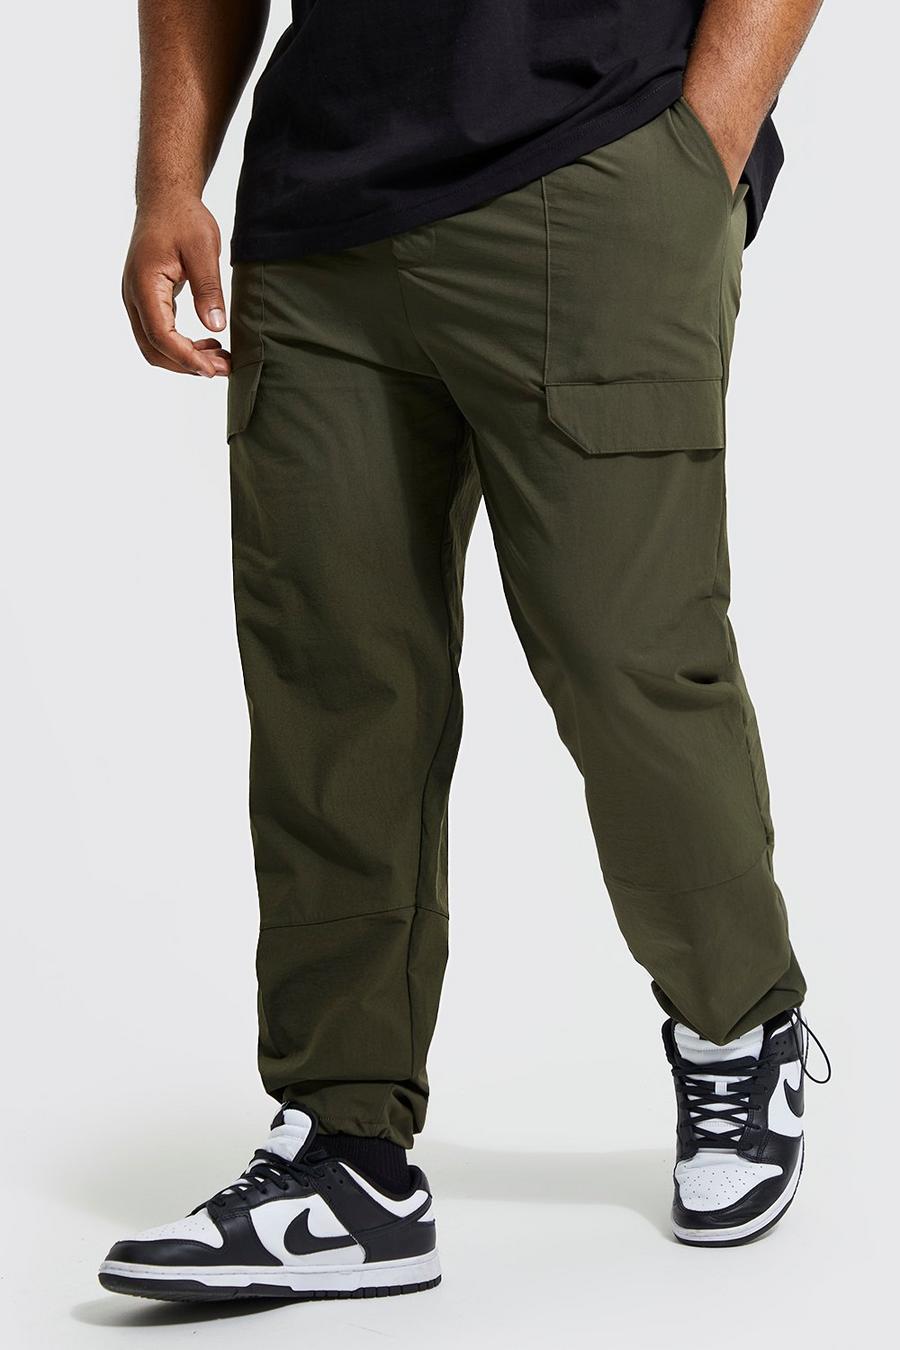 Grande taille - Pantalon coupe slim à empiècement technique - Ofcl, Olive vert